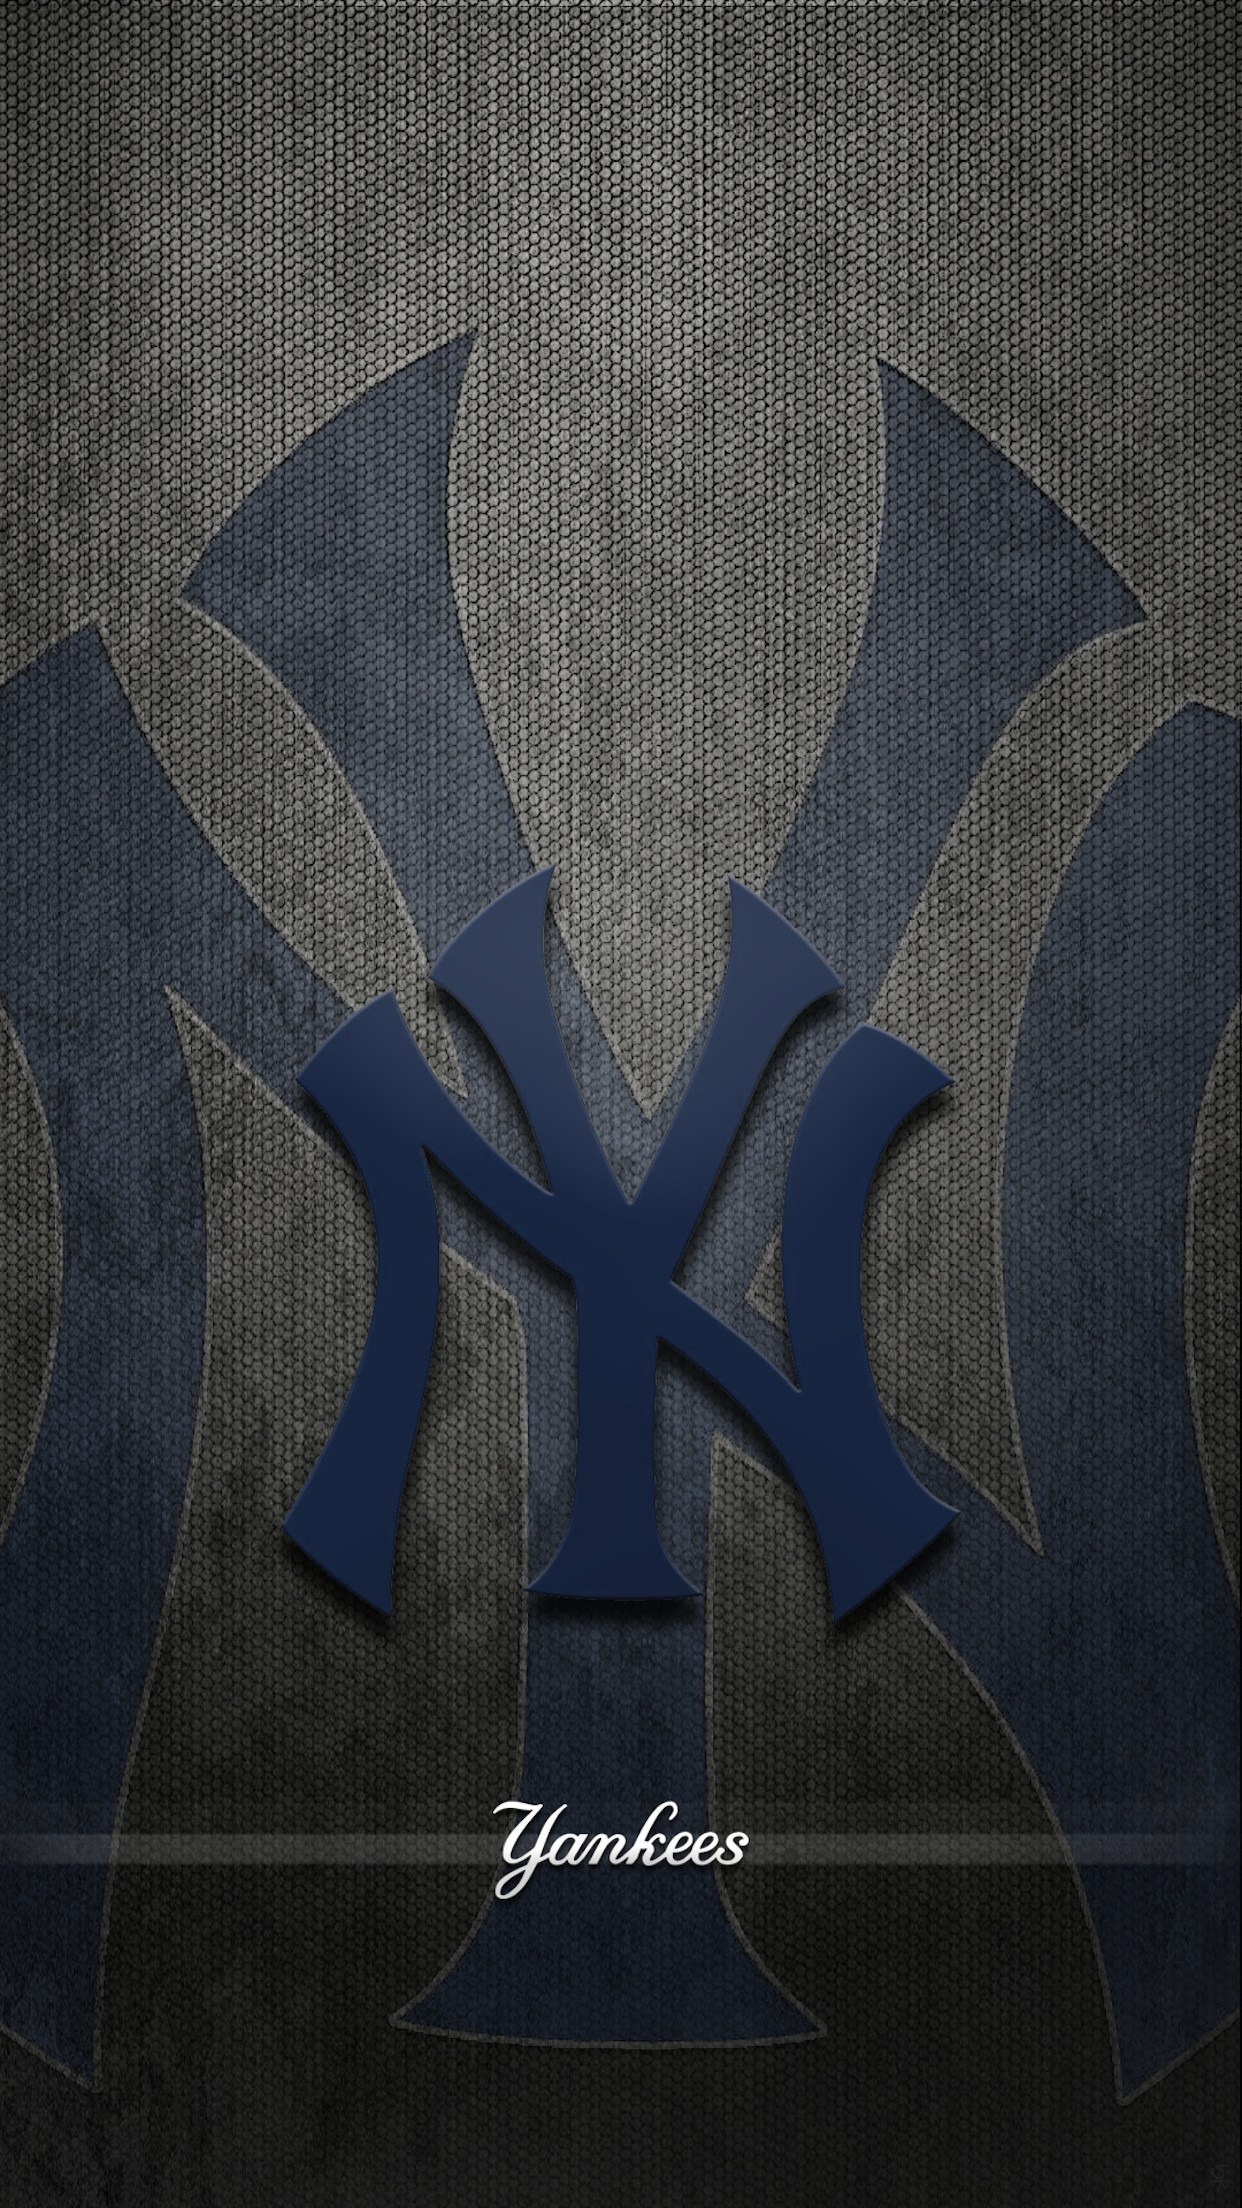 뉴욕 양키스 아이폰 배경 화면,푸른,폰트,무늬,타일,달필